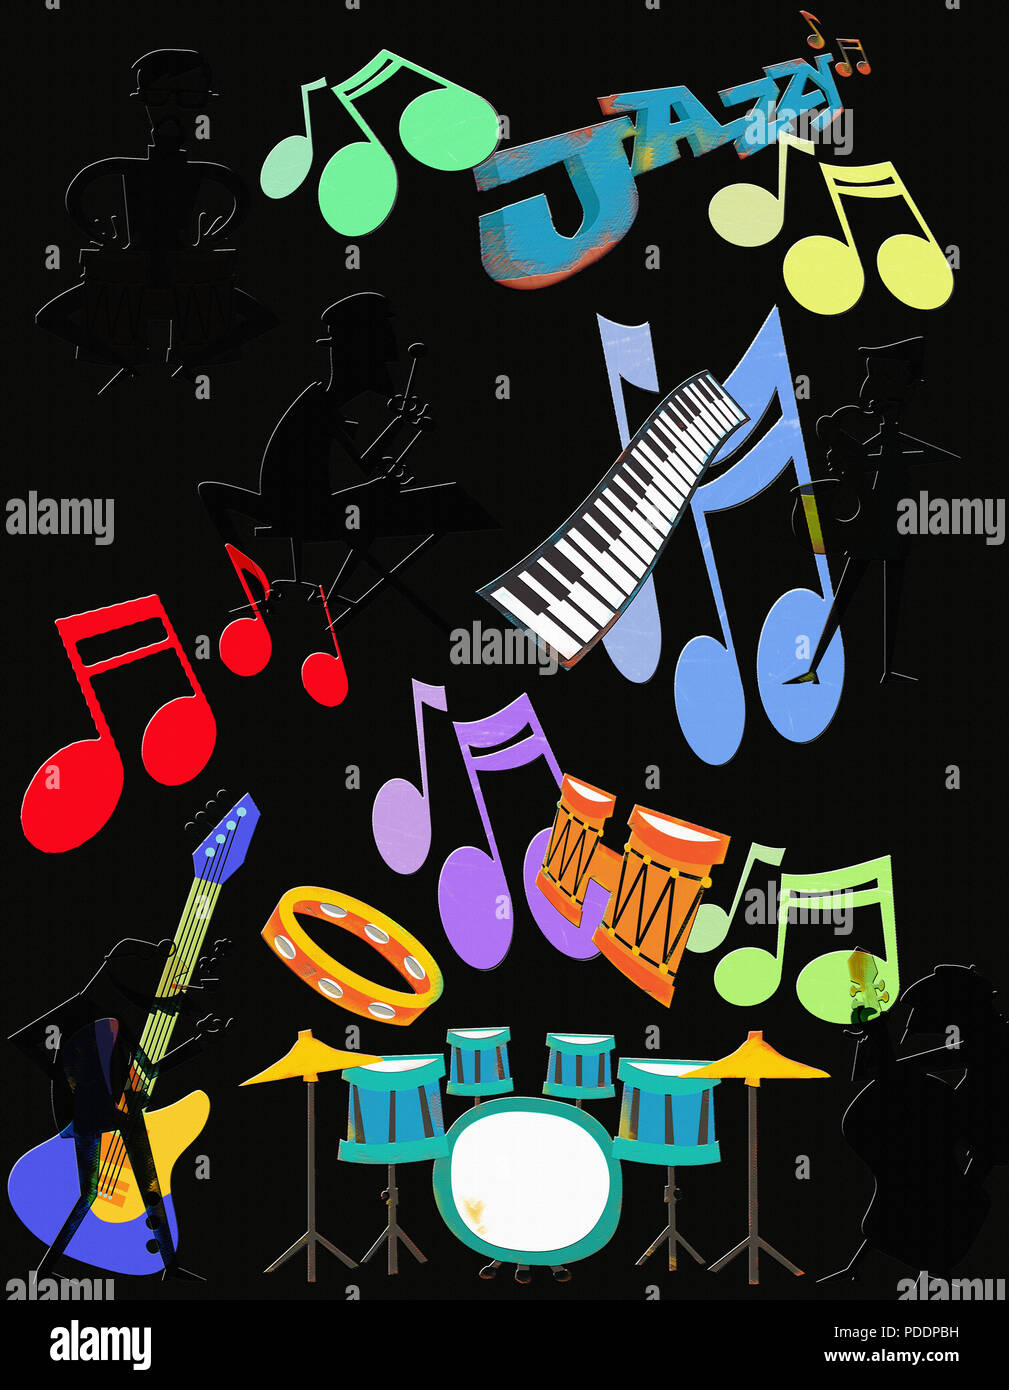 Verschiedene grafische Elemente kombinieren die "Hipster" Ära und der Pappel musikalische Genre des Jazz zu repräsentieren. Stockfoto